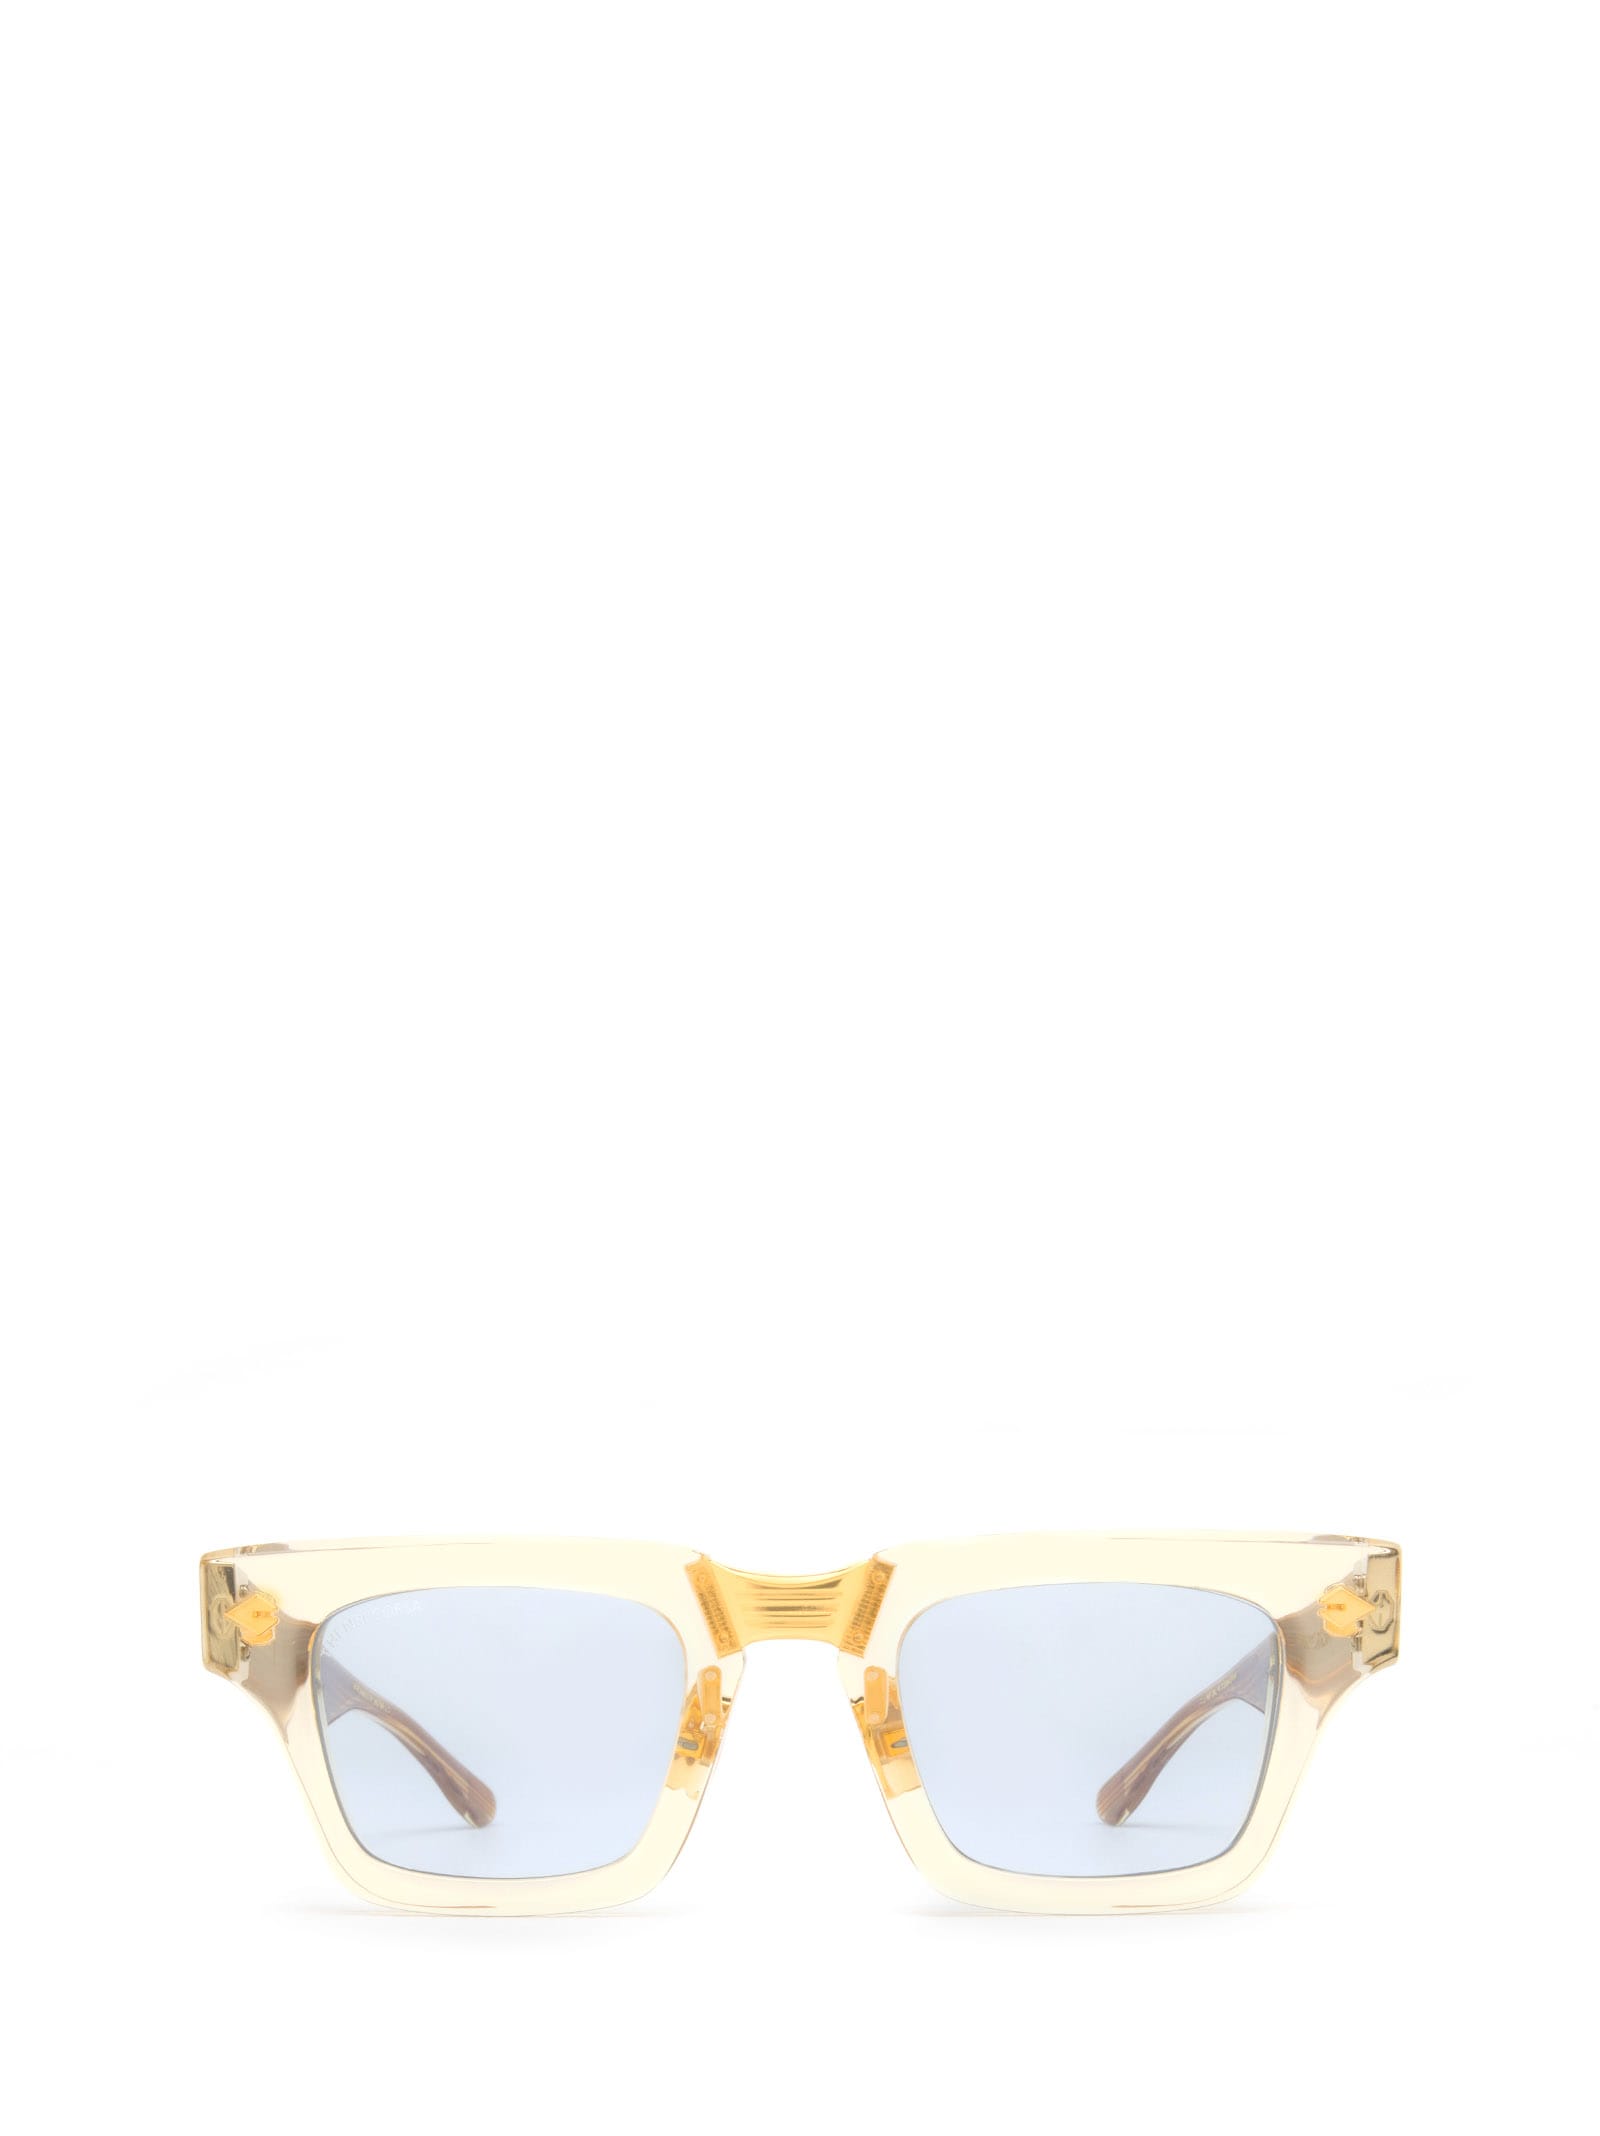 T Henri Corsa Champagne Sunglasses